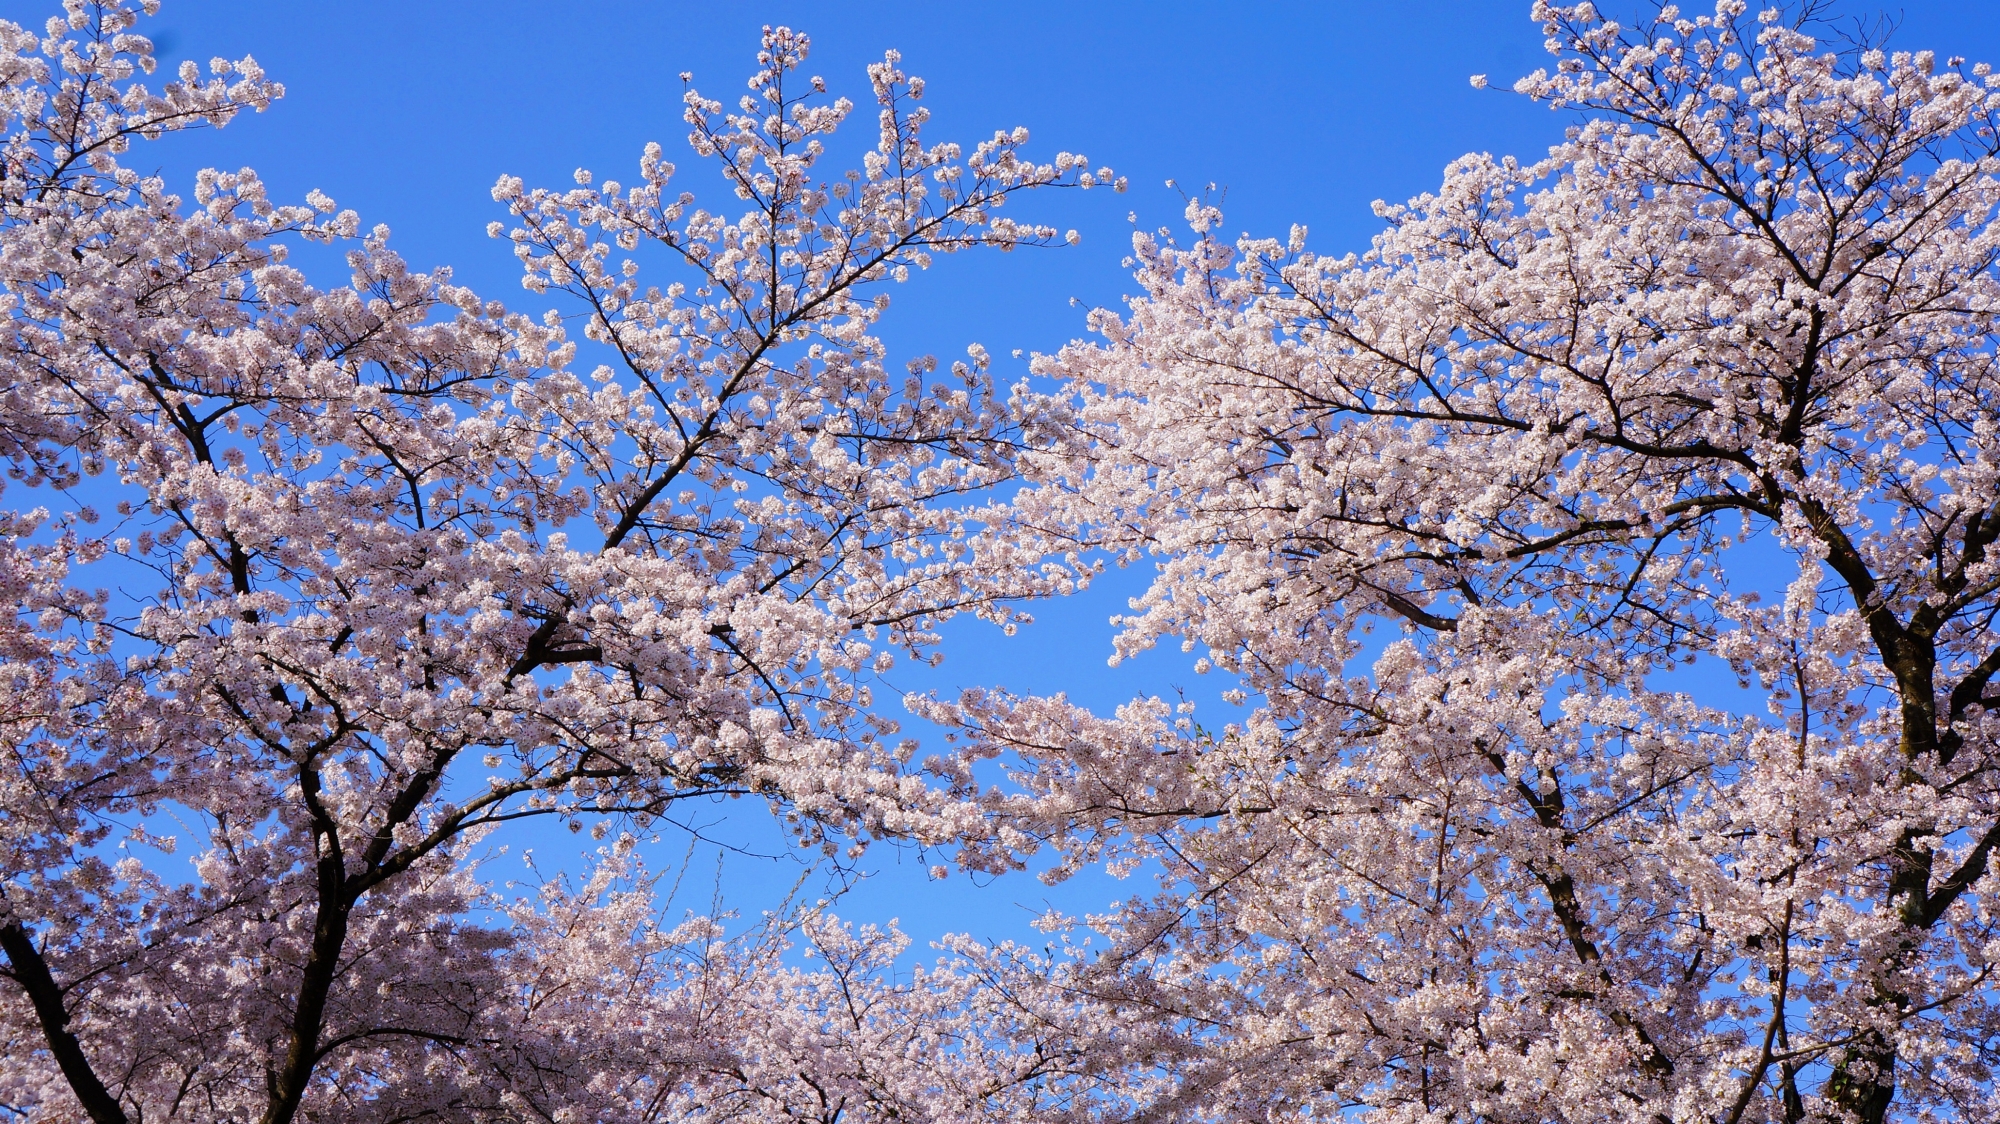 「桜の神社」の名に恥じない天晴れな桜